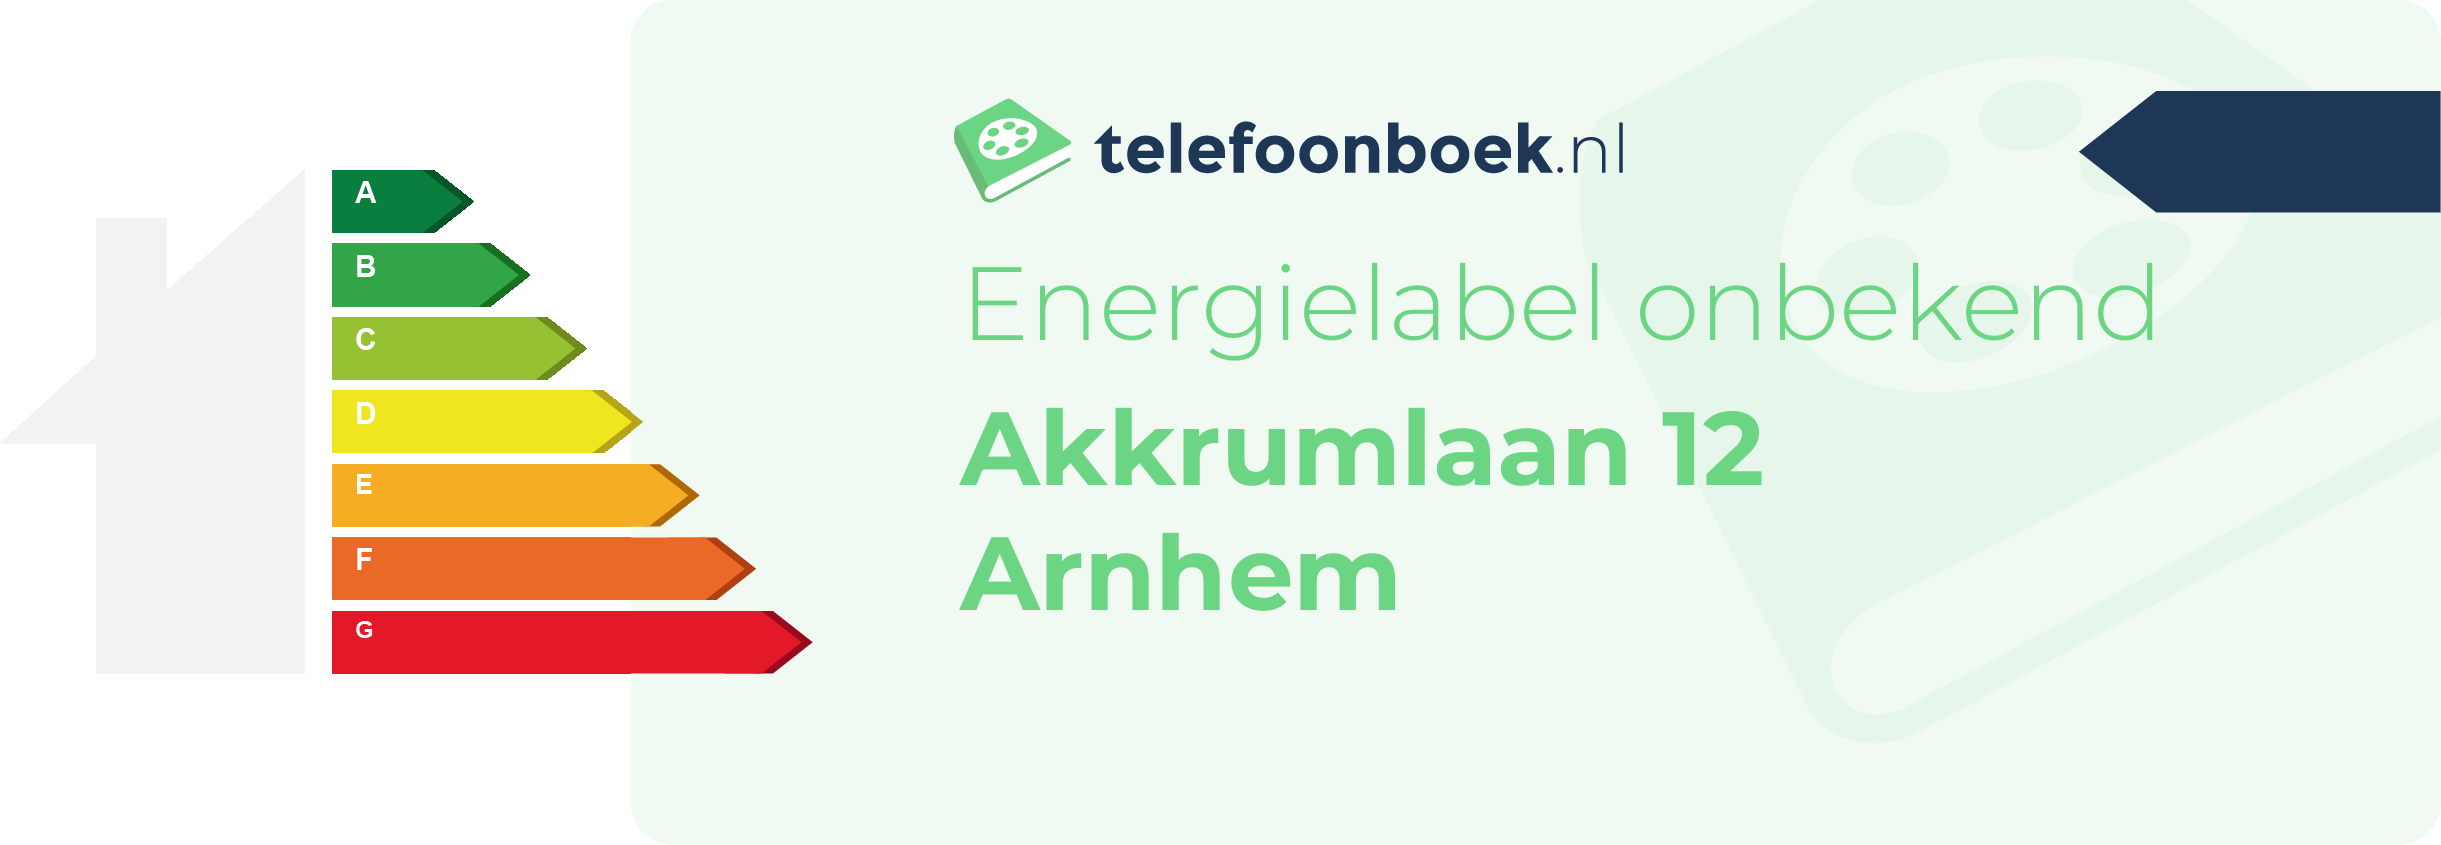 Energielabel Akkrumlaan 12 Arnhem